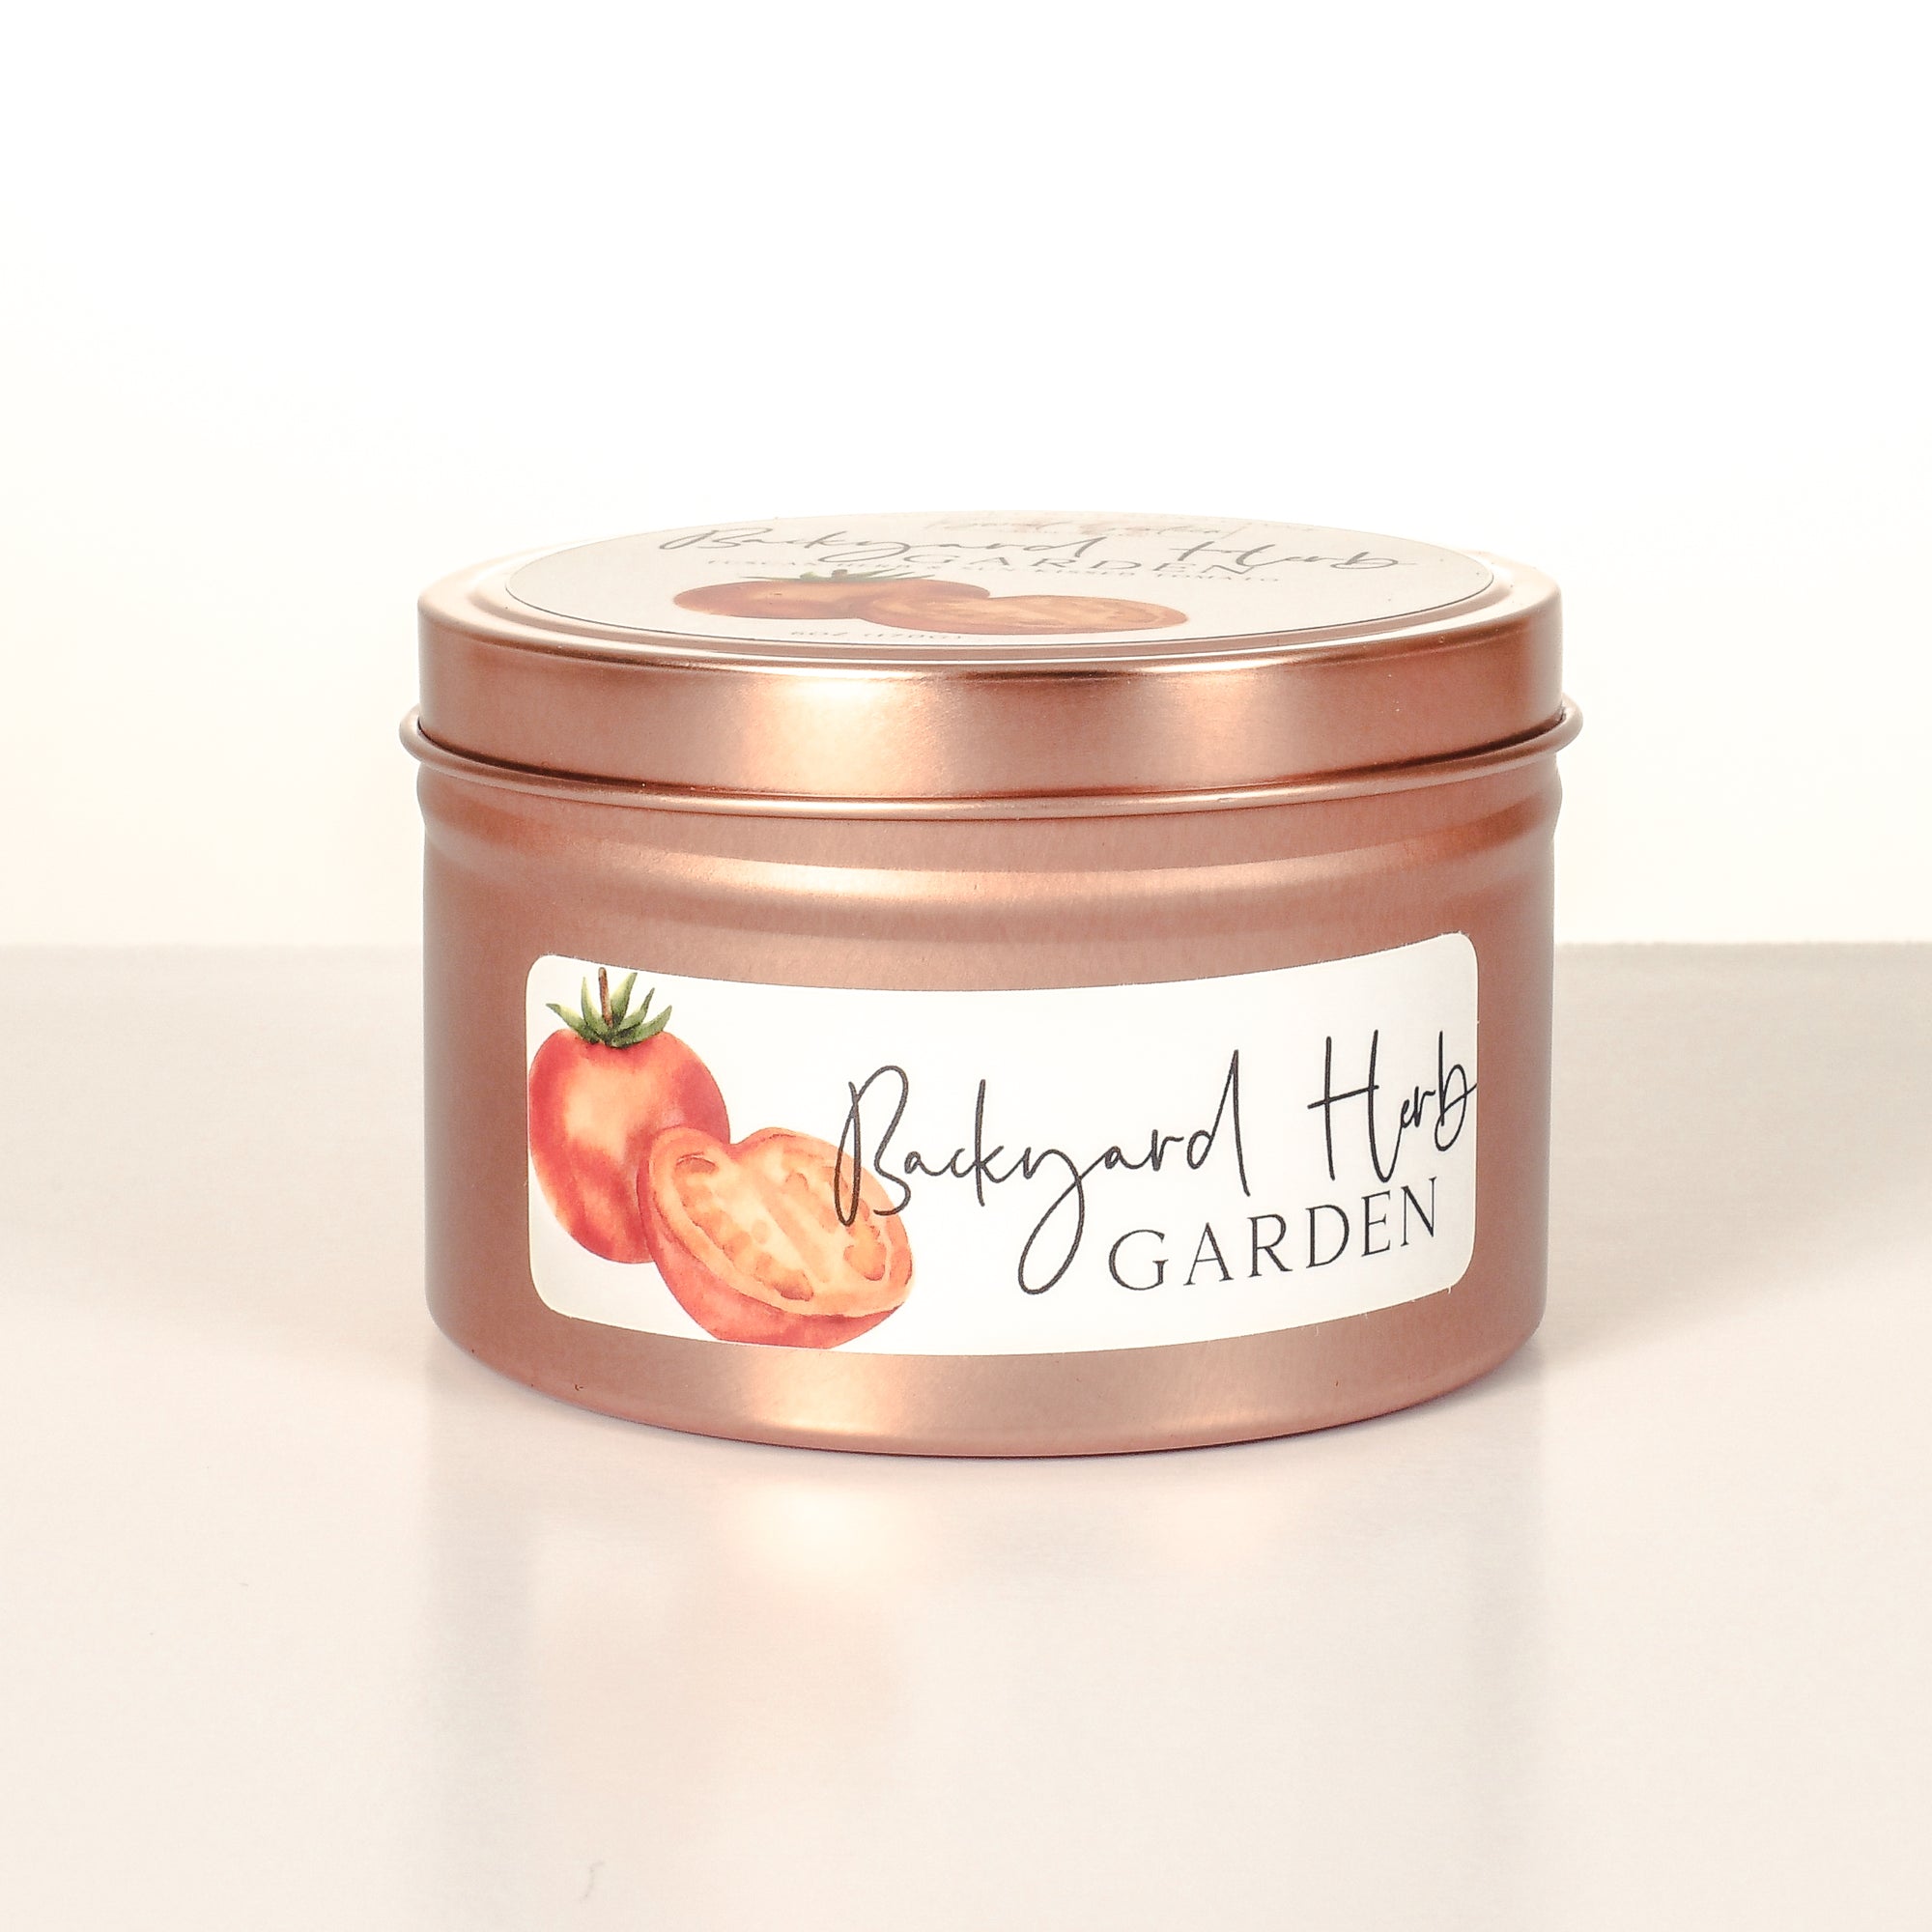 Backyard Herb Garden | 6oz Tin Candle | Signature Collection